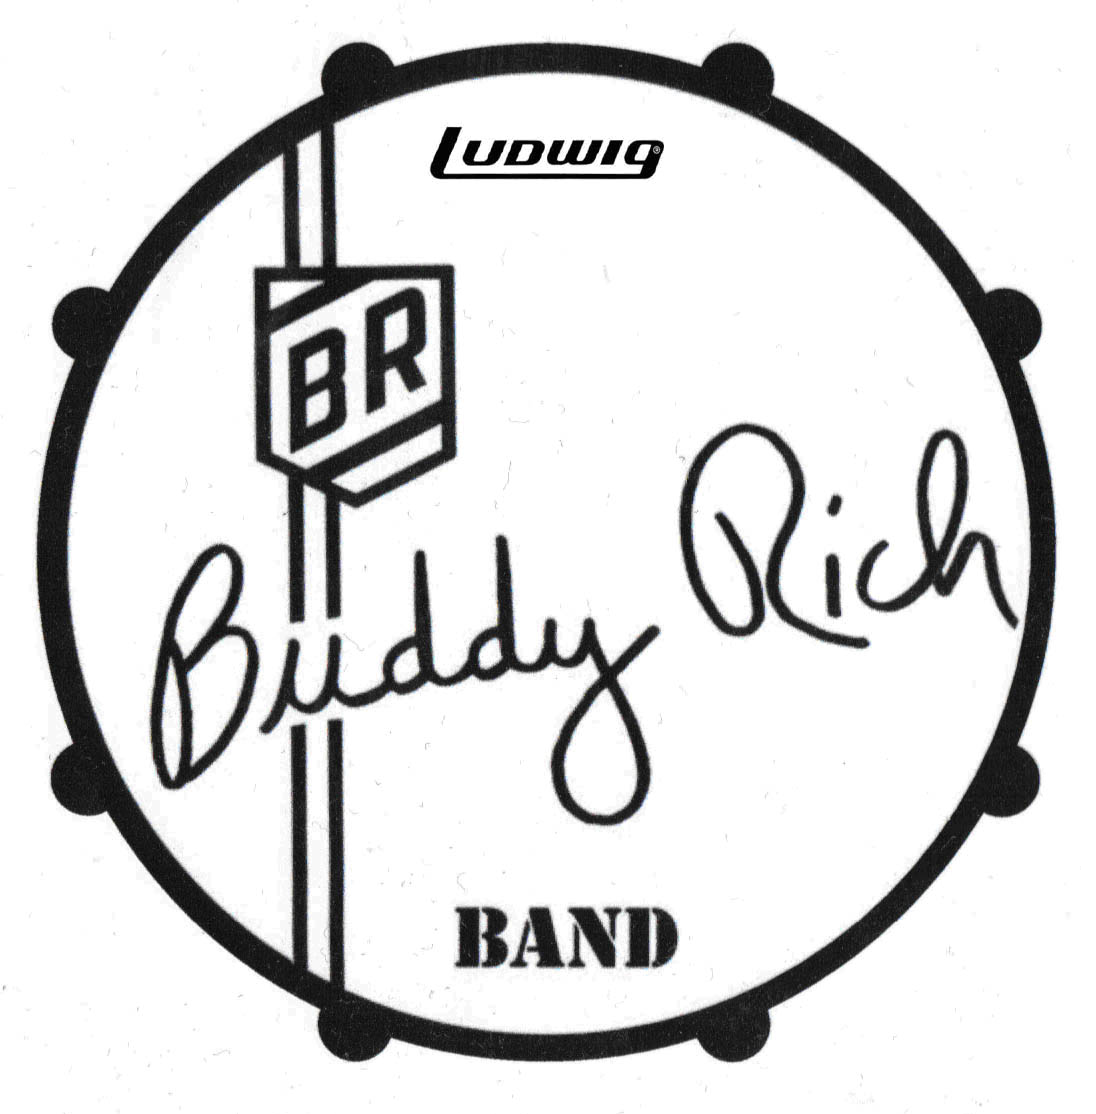 File:The Buddy Rich Band Logo